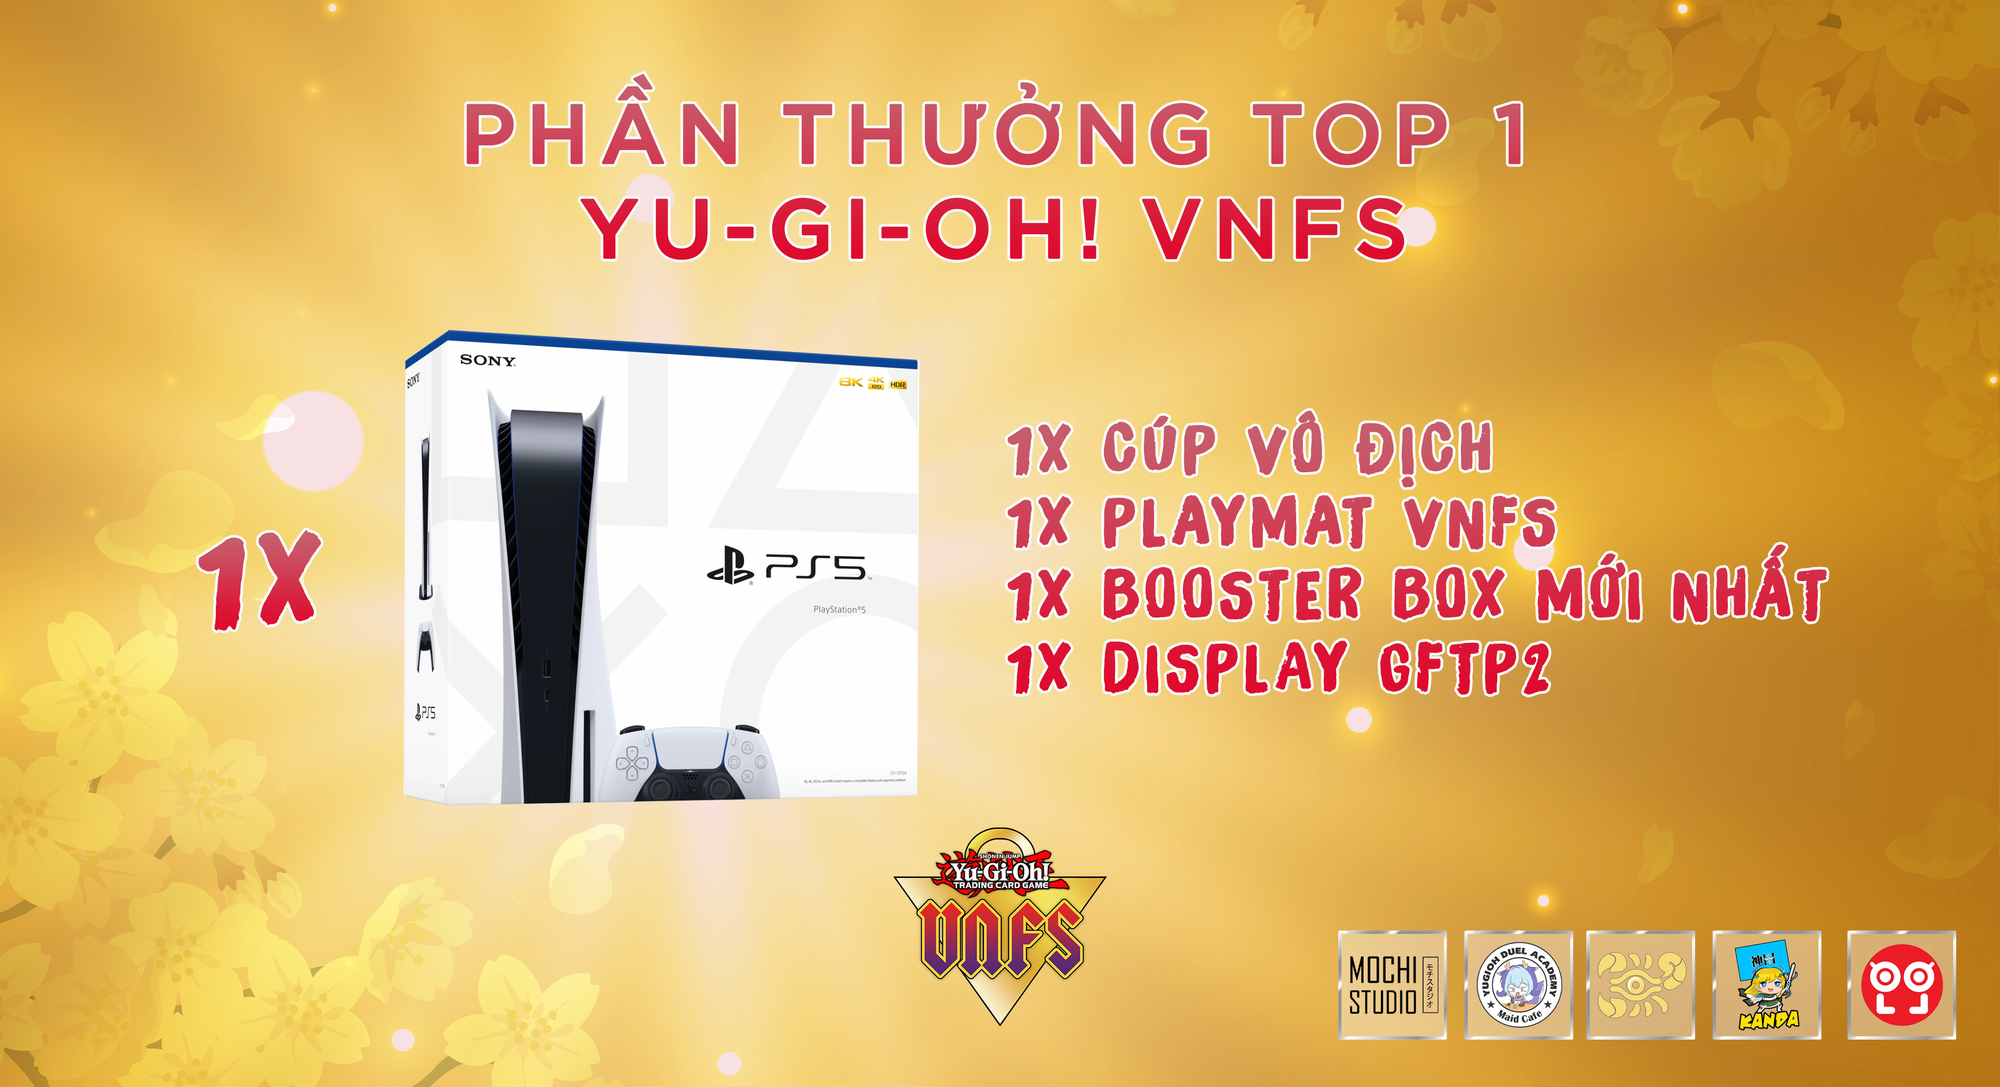 Yu-Gi-Oh! VNFS – Lễ hội cosplay và giao lưu Yu-Gi-Oh tại Hà Nội với quy mô cực khủng - Ảnh 1.